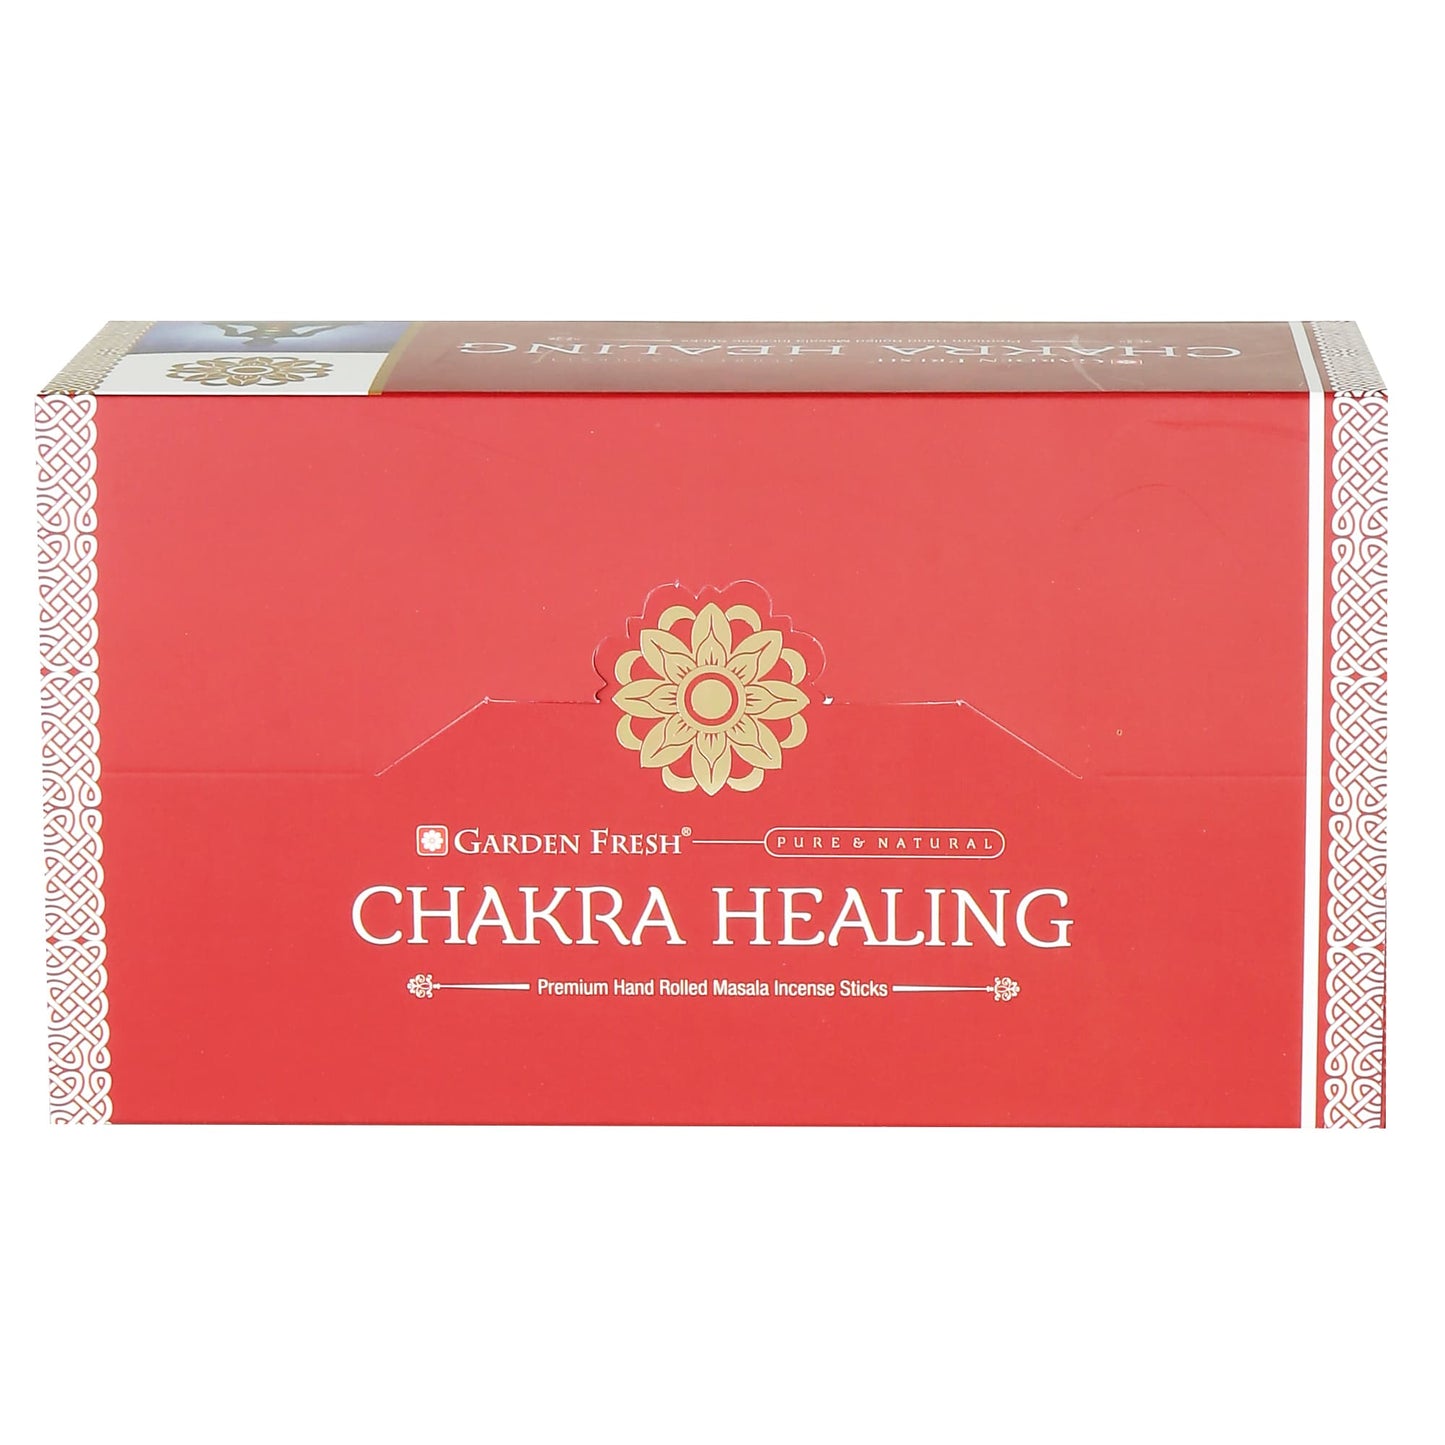 Chakra Healing masala incense sticks